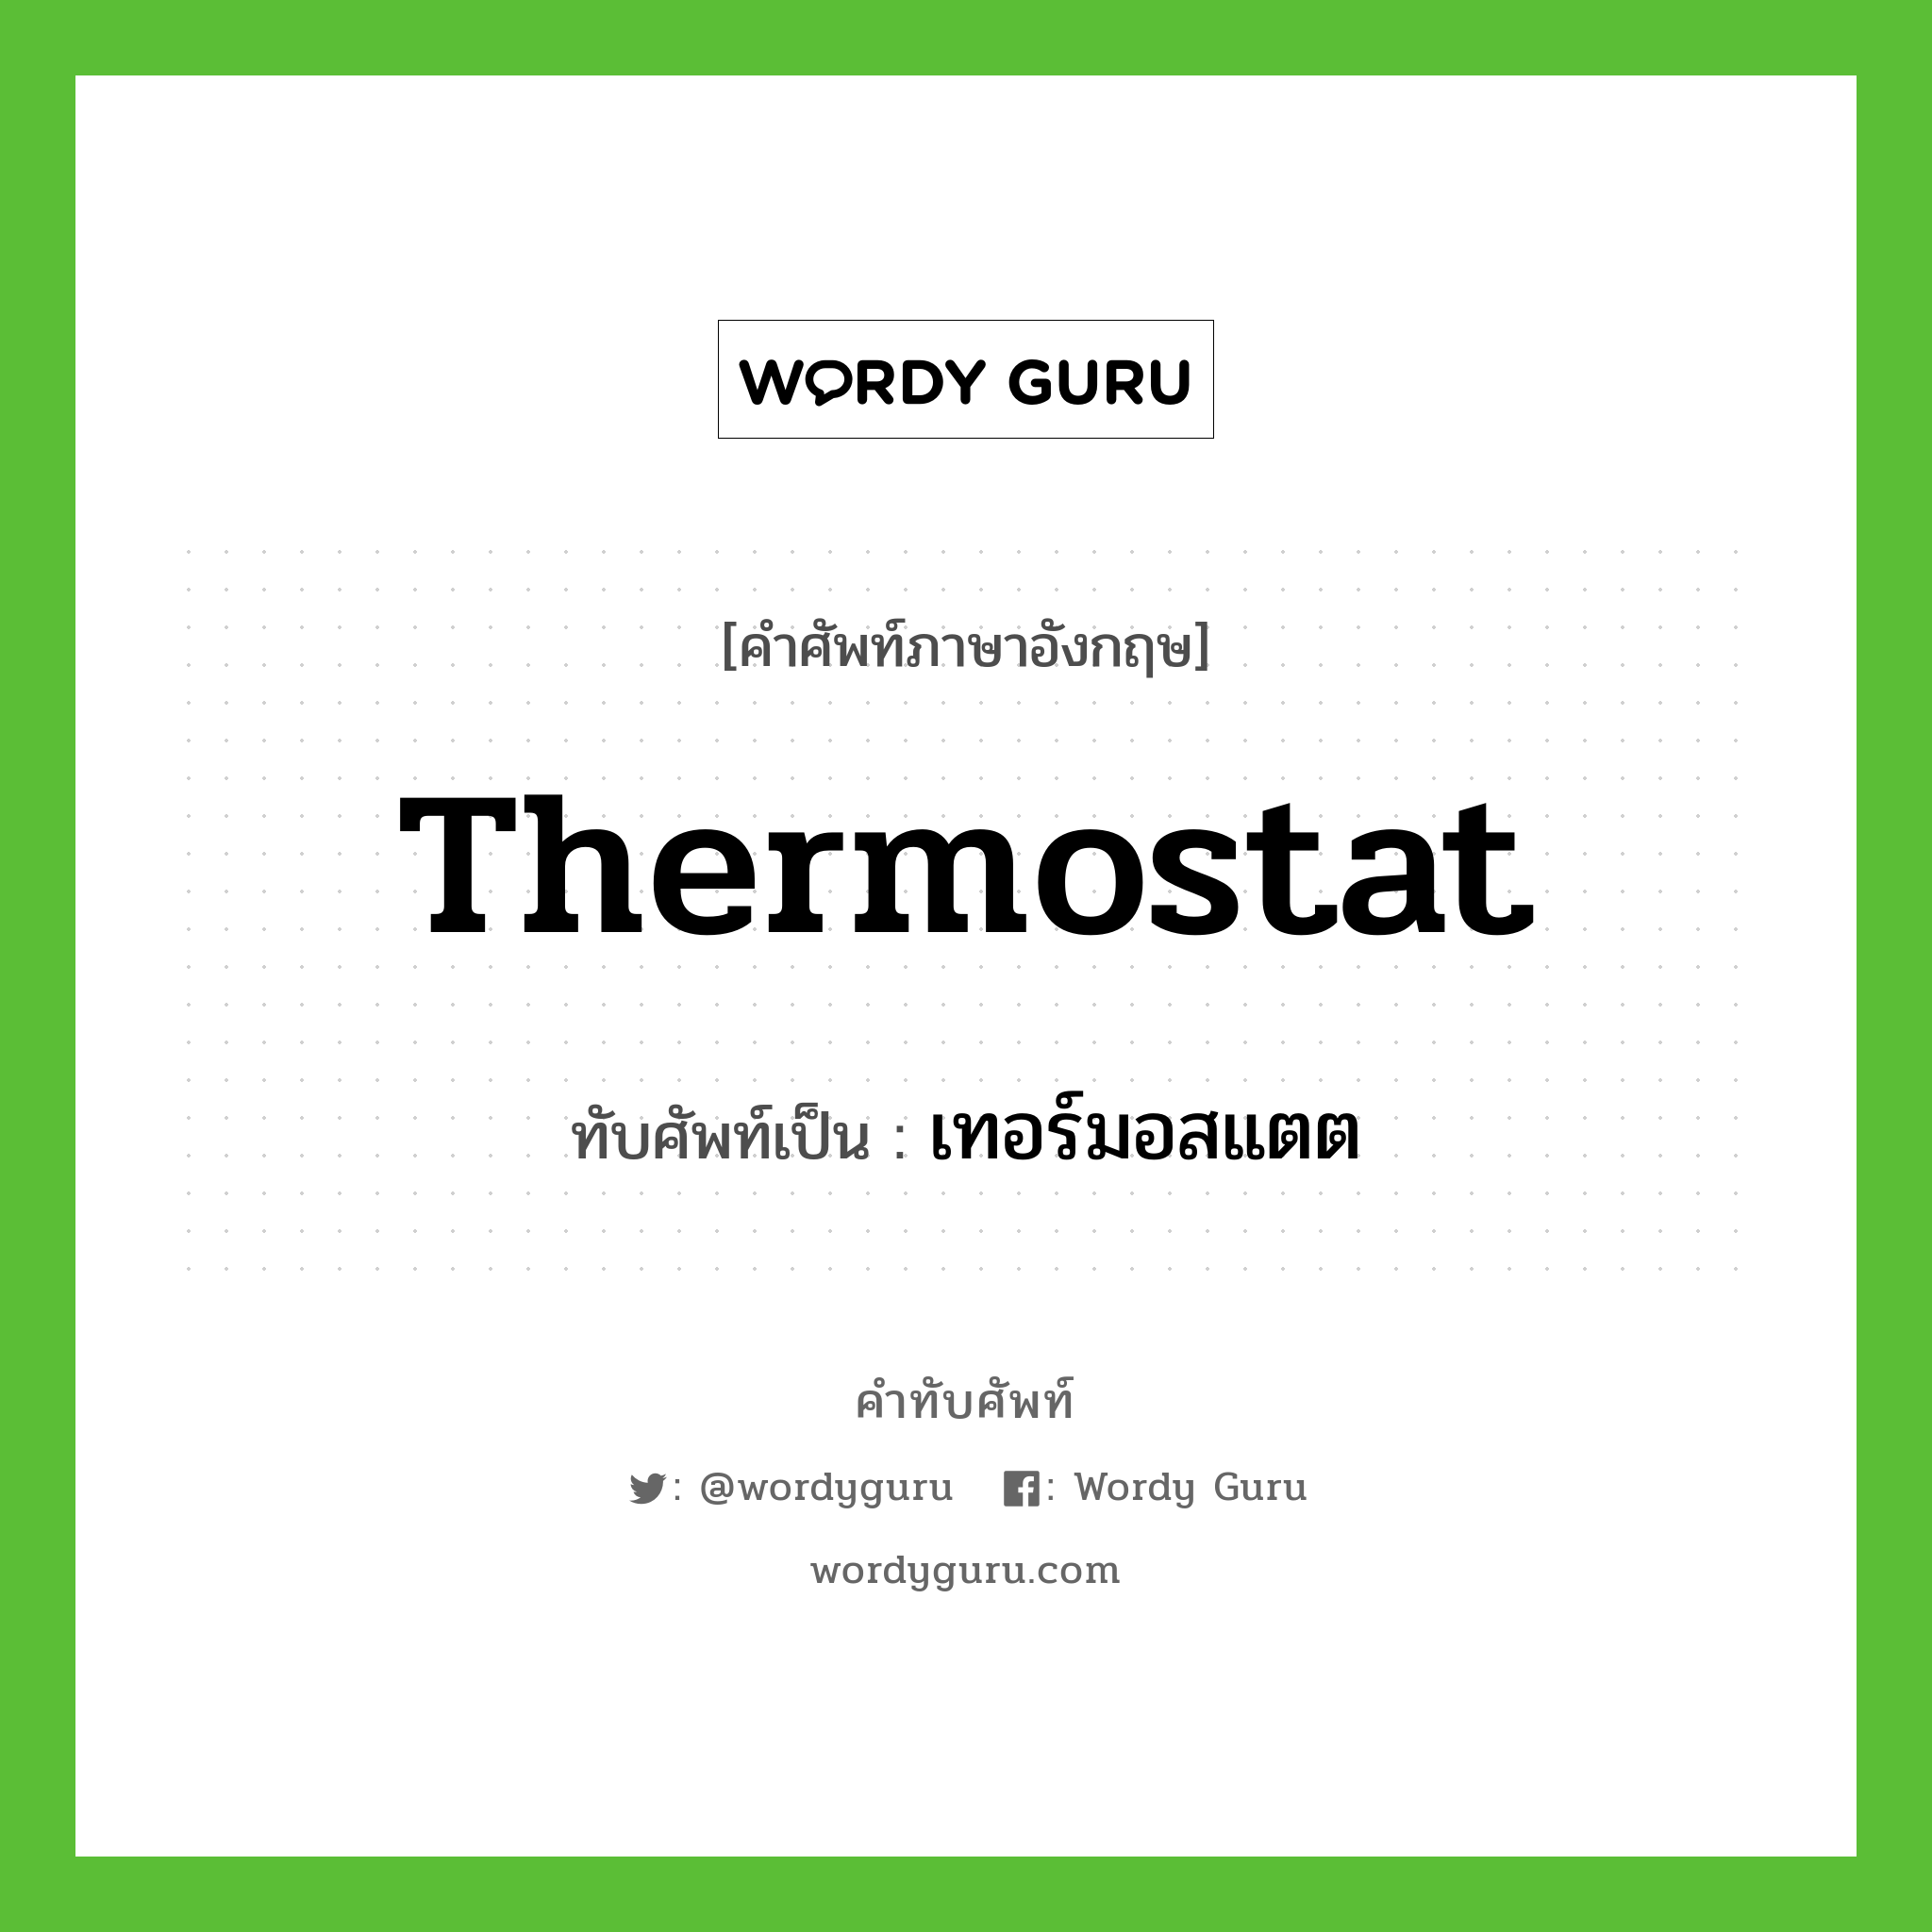 thermostat เขียนเป็นคำไทยว่าอะไร?, คำศัพท์ภาษาอังกฤษ thermostat ทับศัพท์เป็น เทอร์มอสแตต